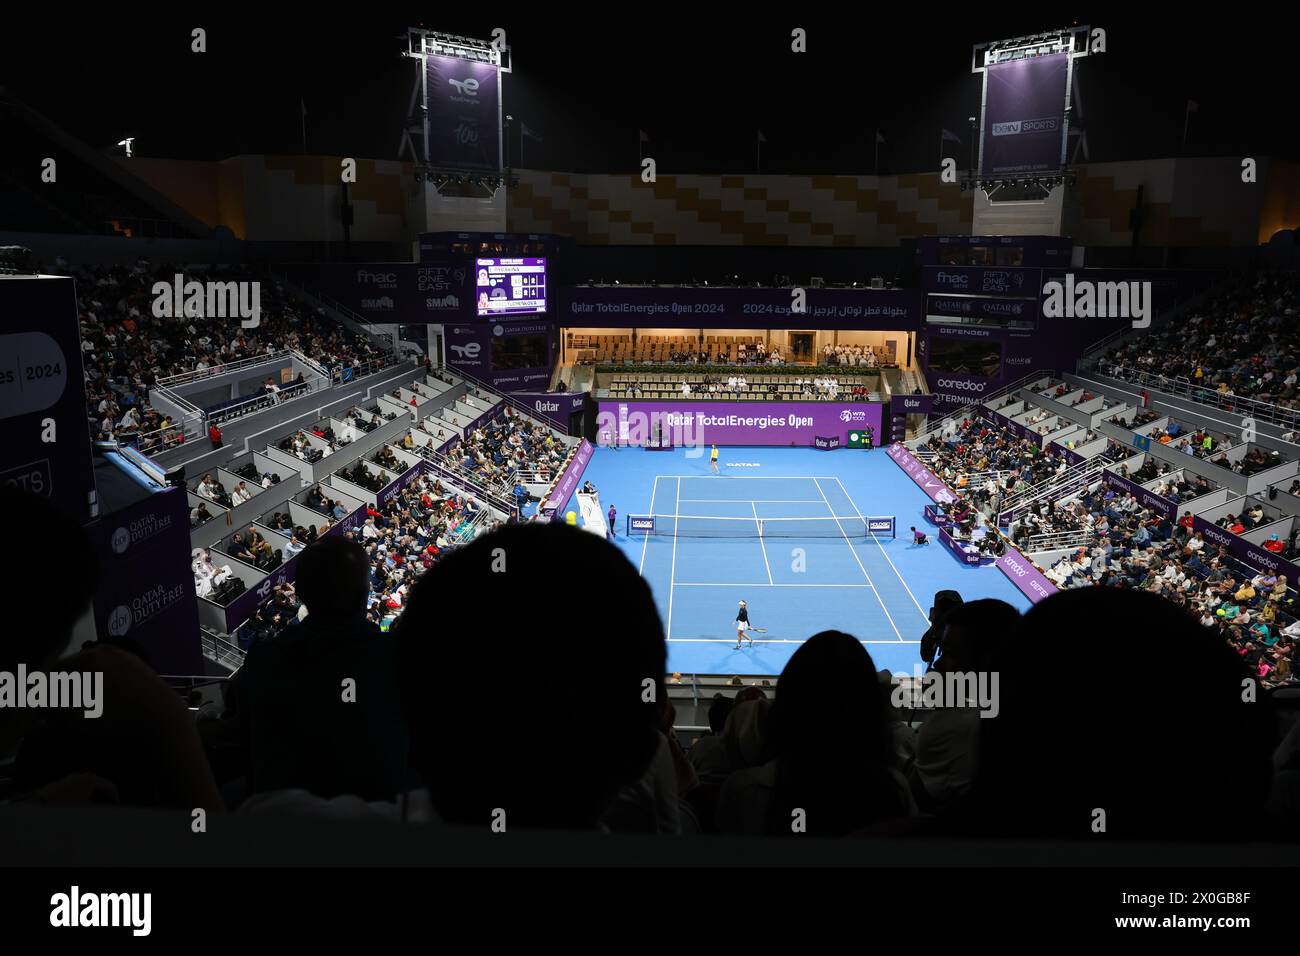 QATAR TOTALENERGIES S'OUVRE lors du match final entre Anastasia Pavlyuchenkova et Elena Rybakina le 16 février 2024 à Doha, Qatar. Banque D'Images